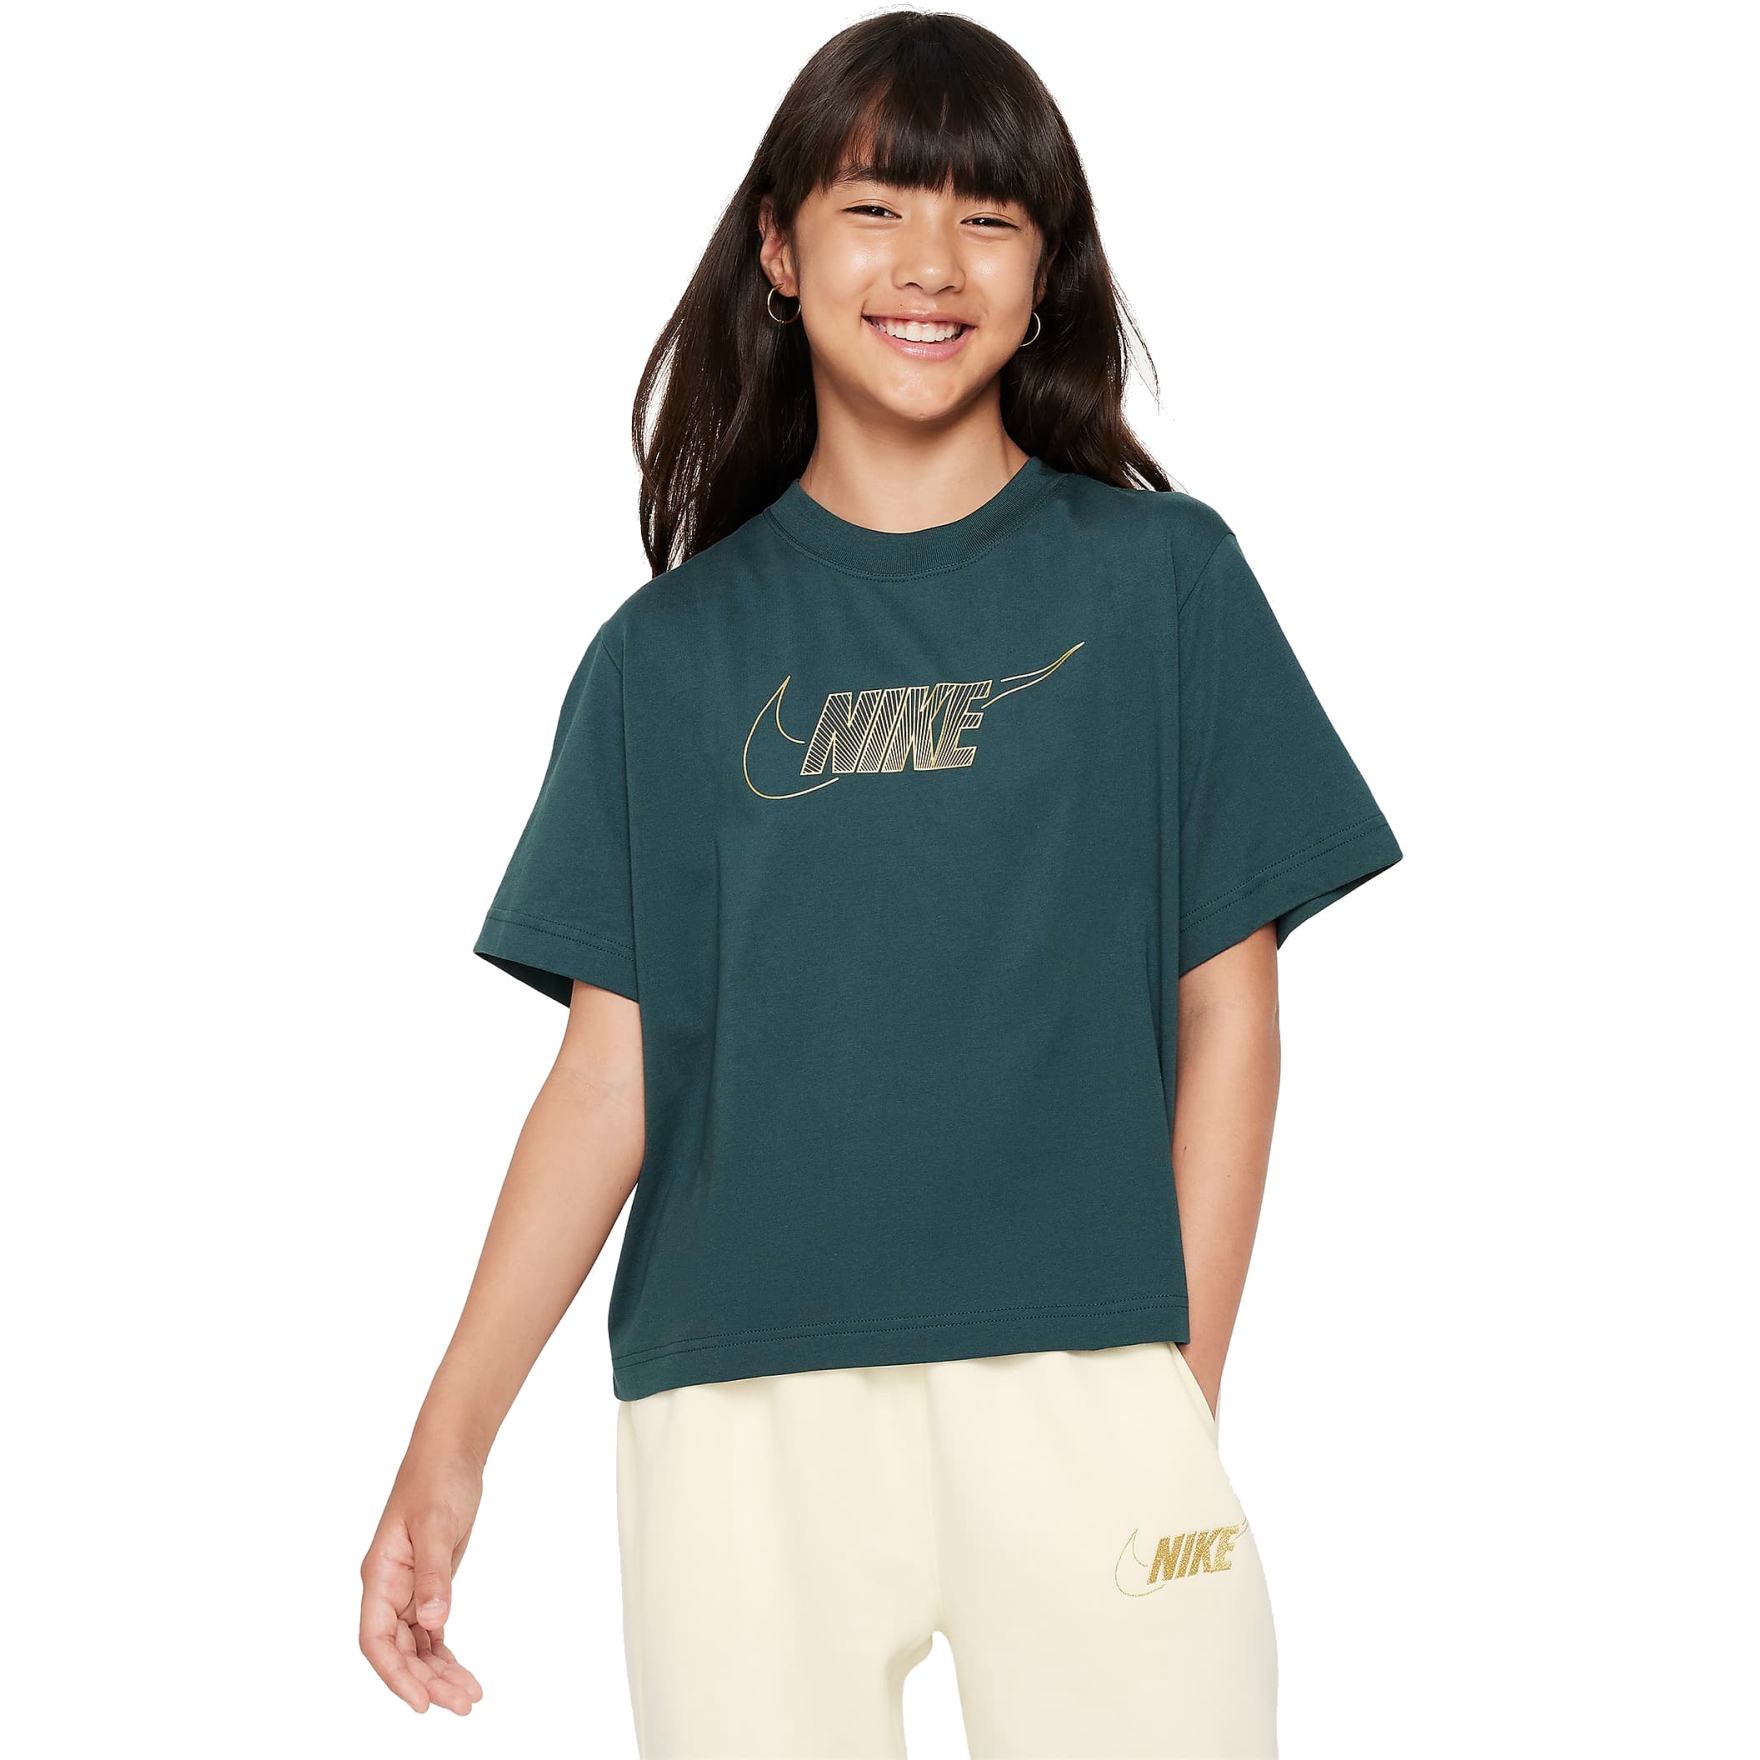 Produktbild von Nike Sportswear Boxy T-Shirt Kinder - deep jungle FJ6785-328